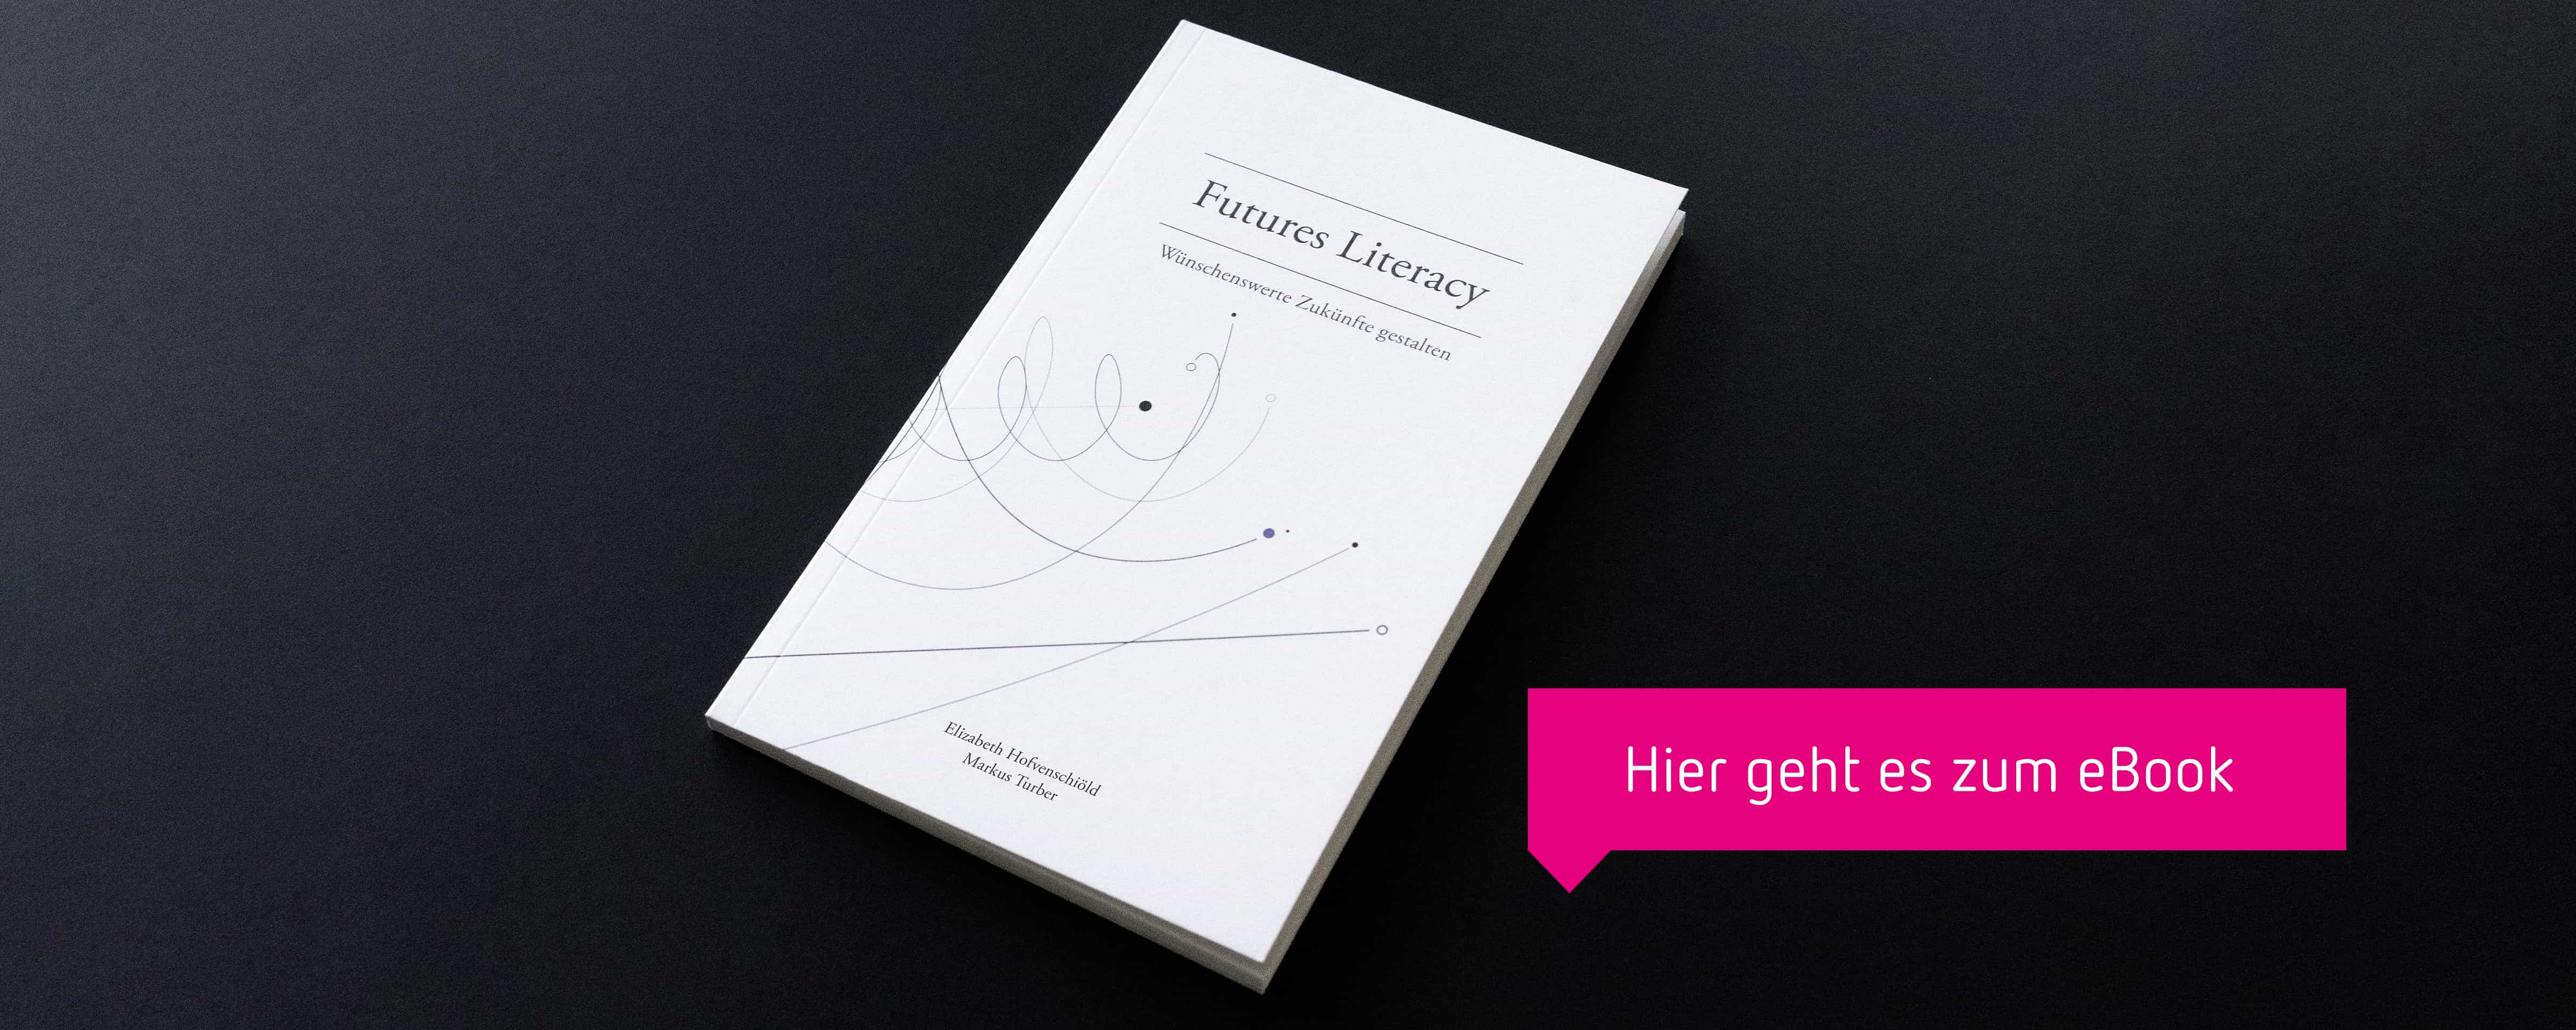 Cover der Veröffentlichung Futures Literacy